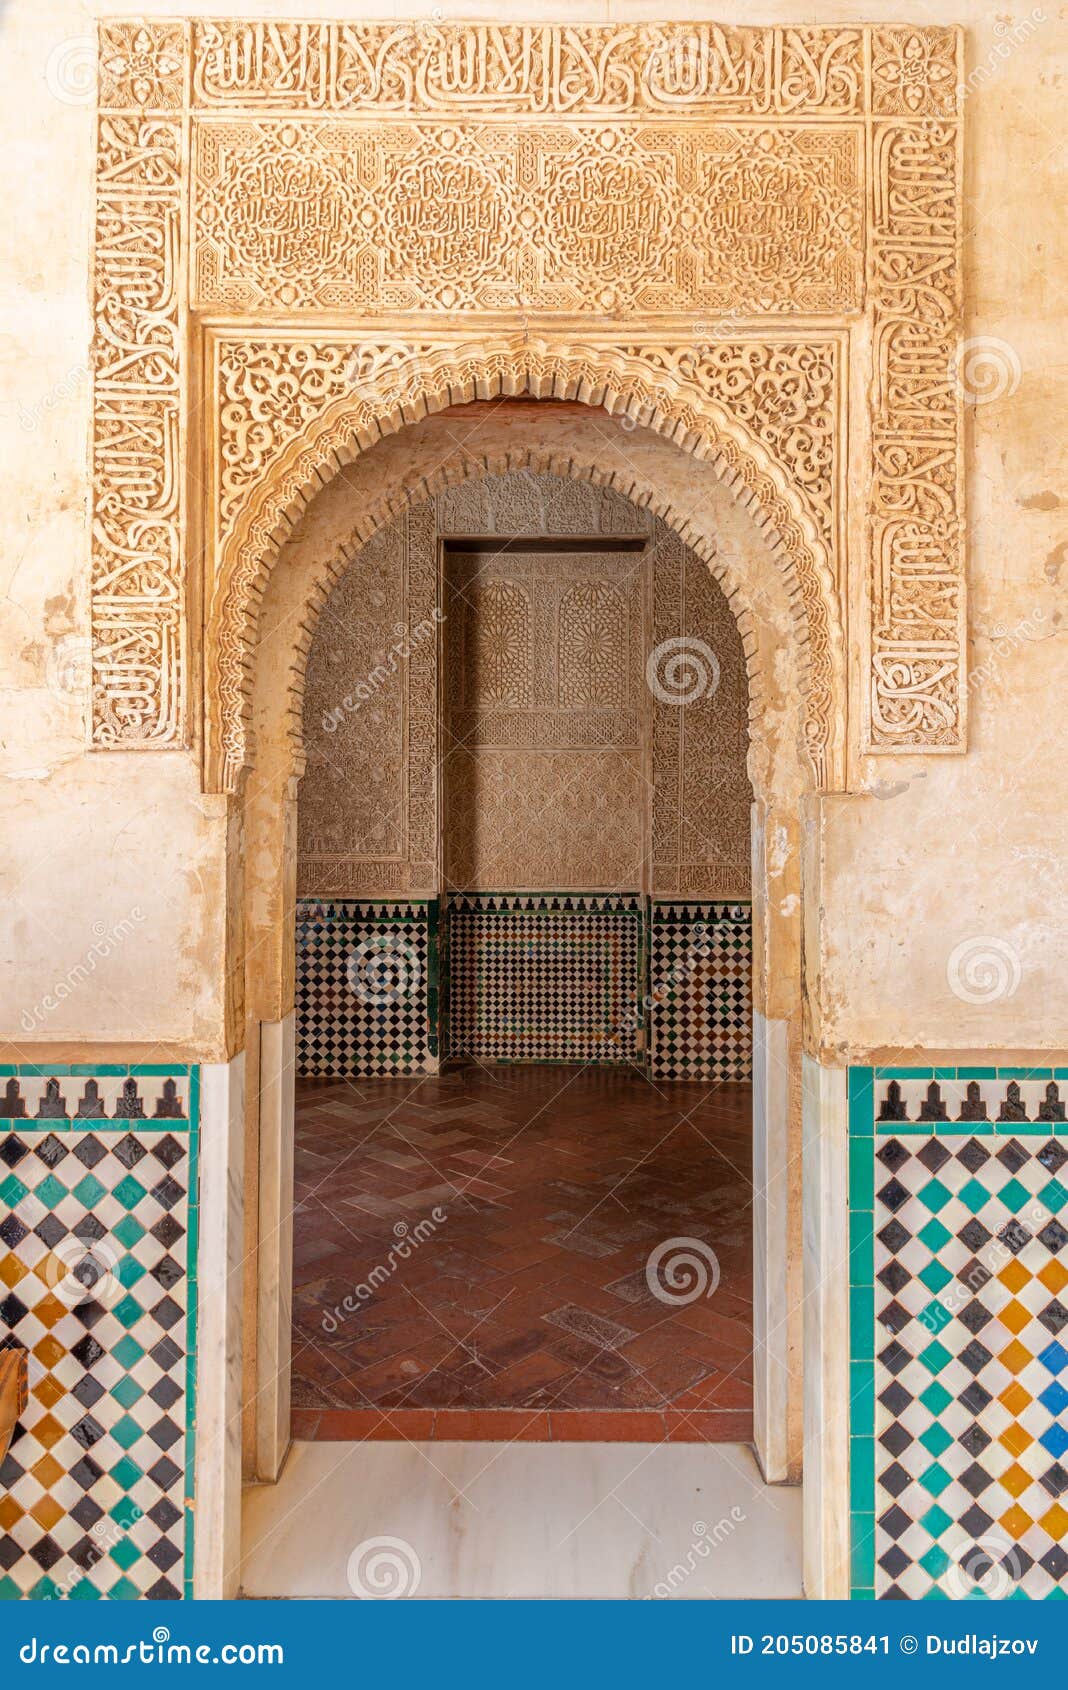 patio del cuarto dorado inside of alhambra palace in granada, spain